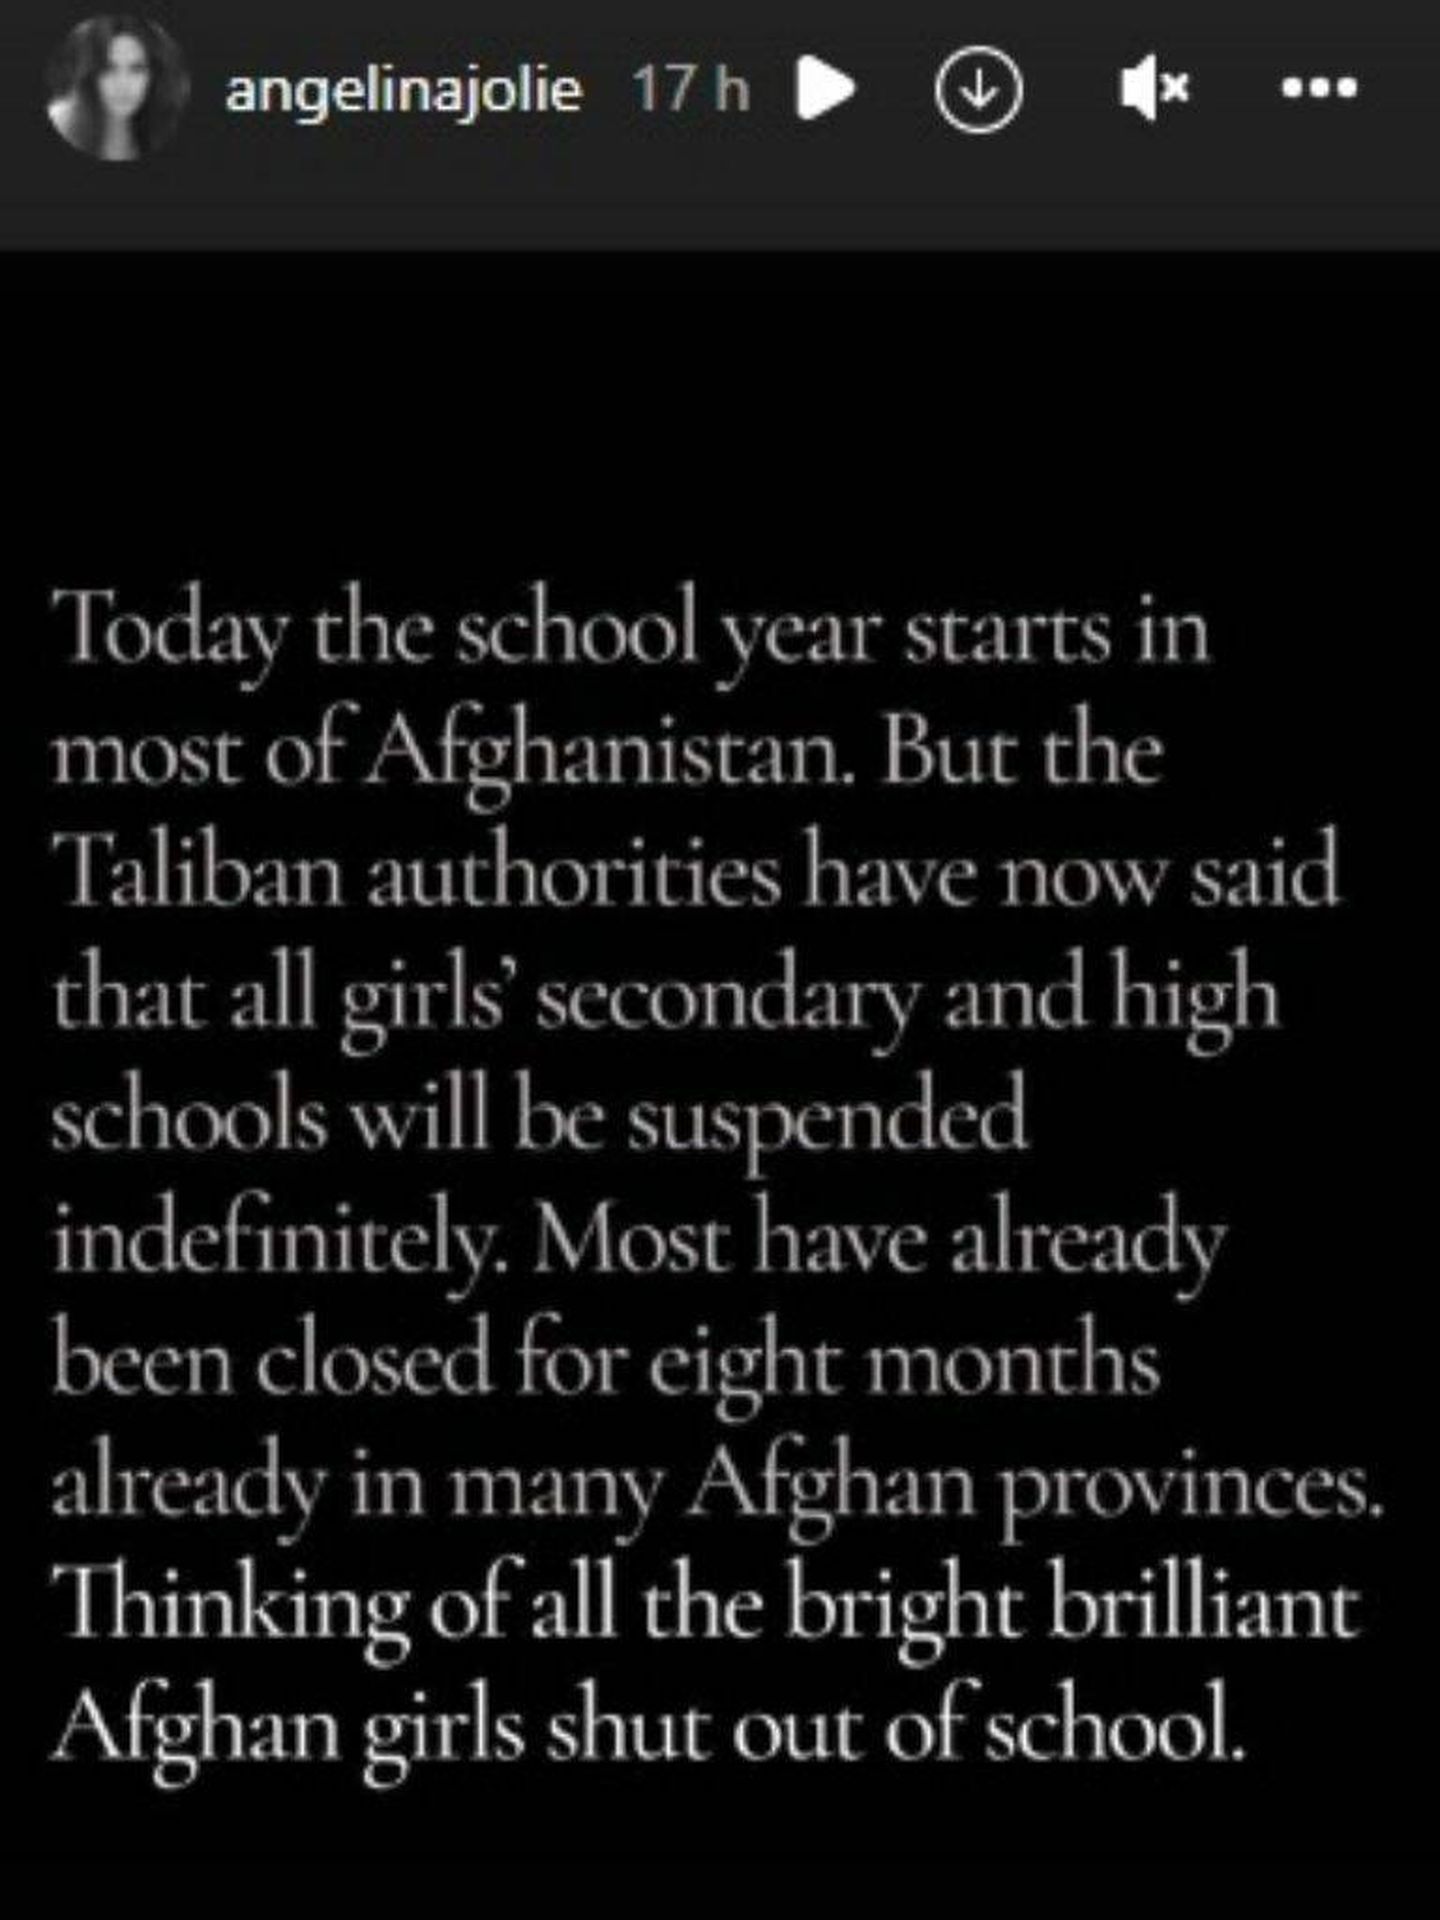 El mensaje de Angelina Jolie sobre las niñas en Afganistán. (Instagram/@angelinajolie)